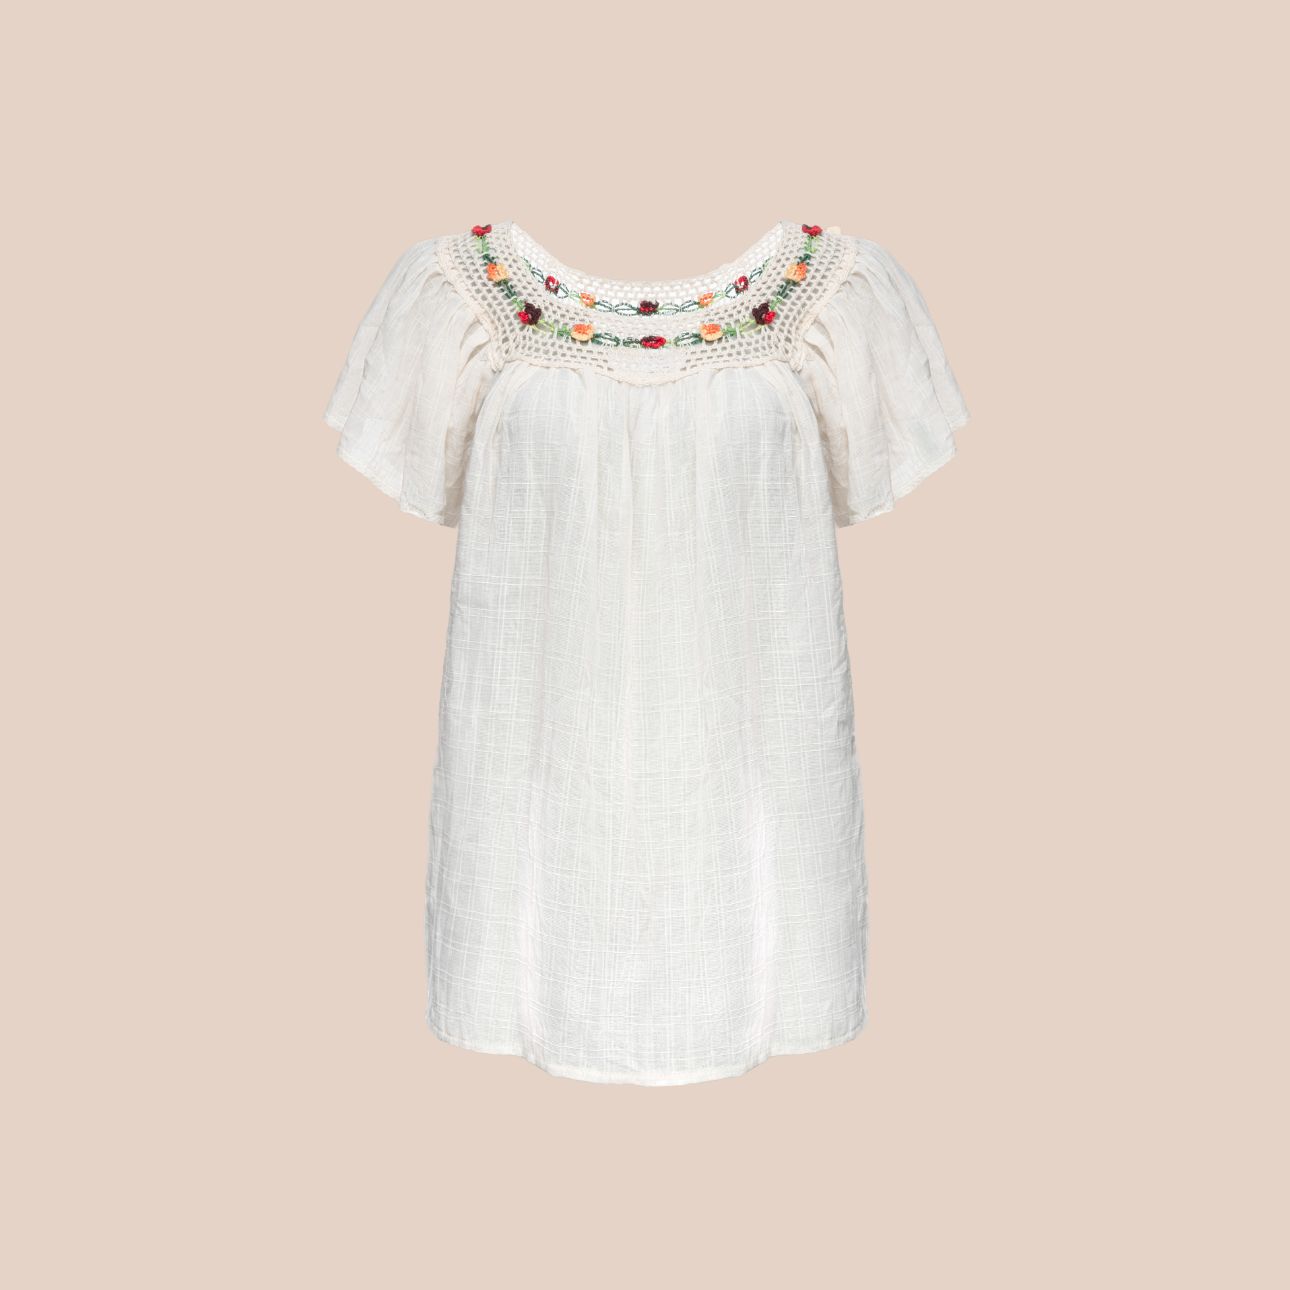 Image de la blouse lola de maison badigo, blouse en coton et acrylique non doublée